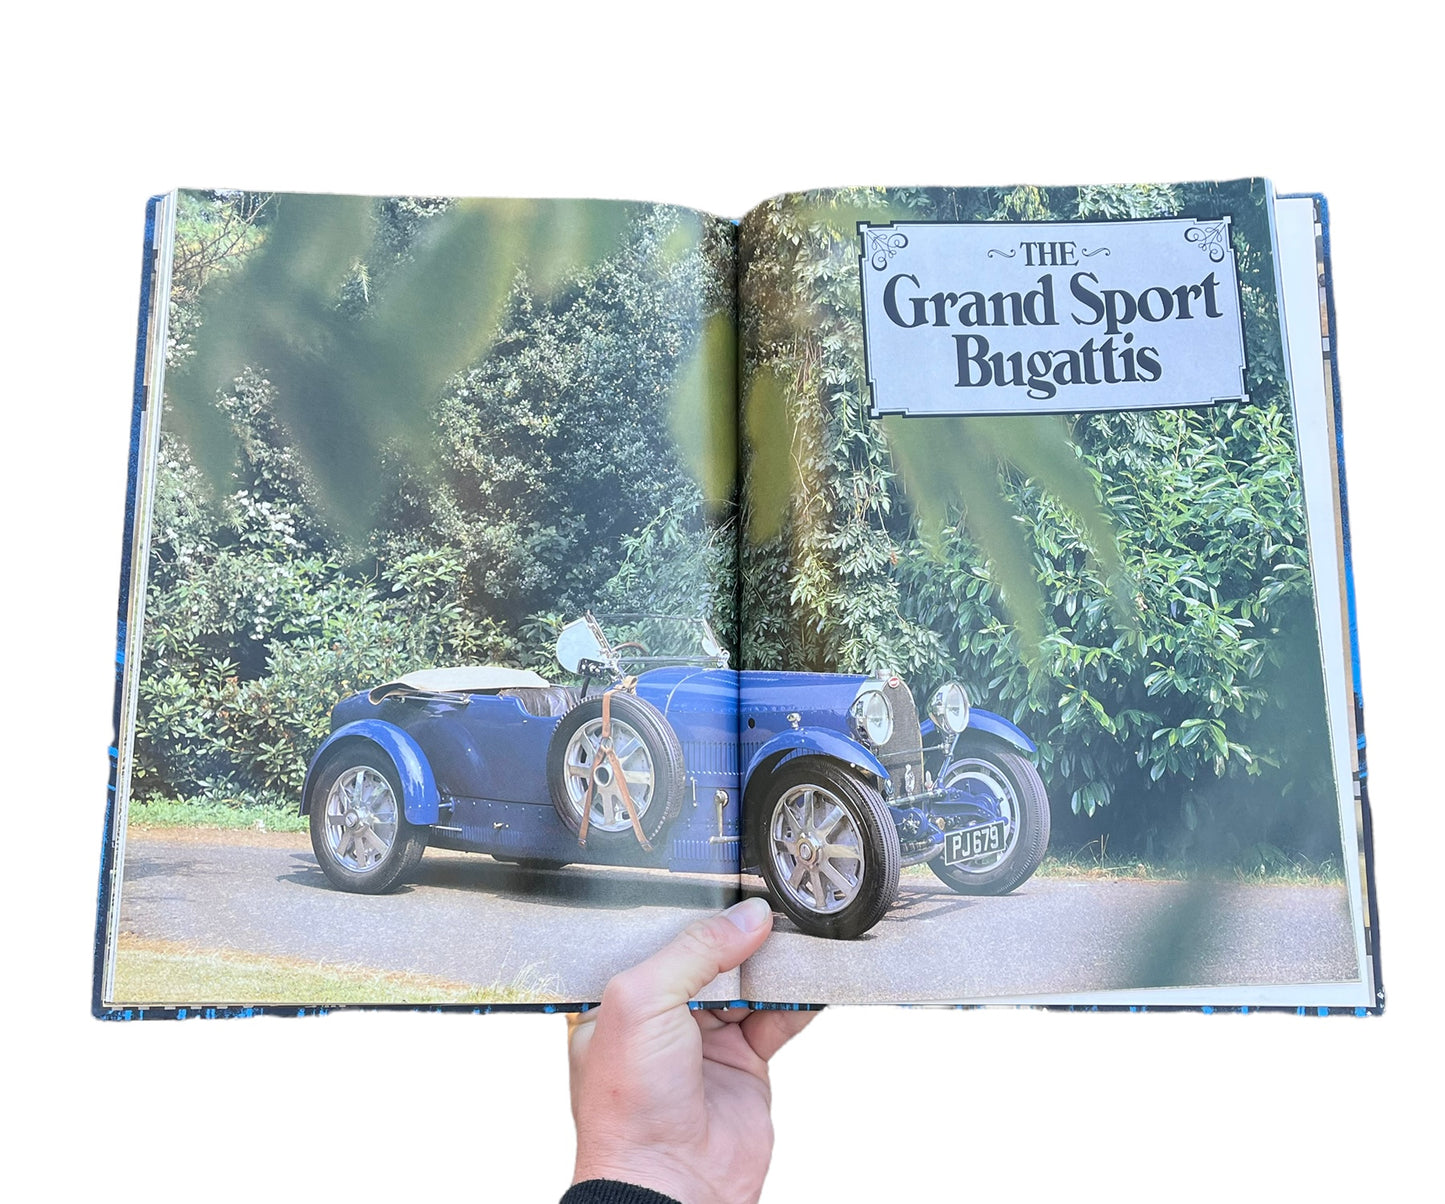 1982 Bugatti Hardcover